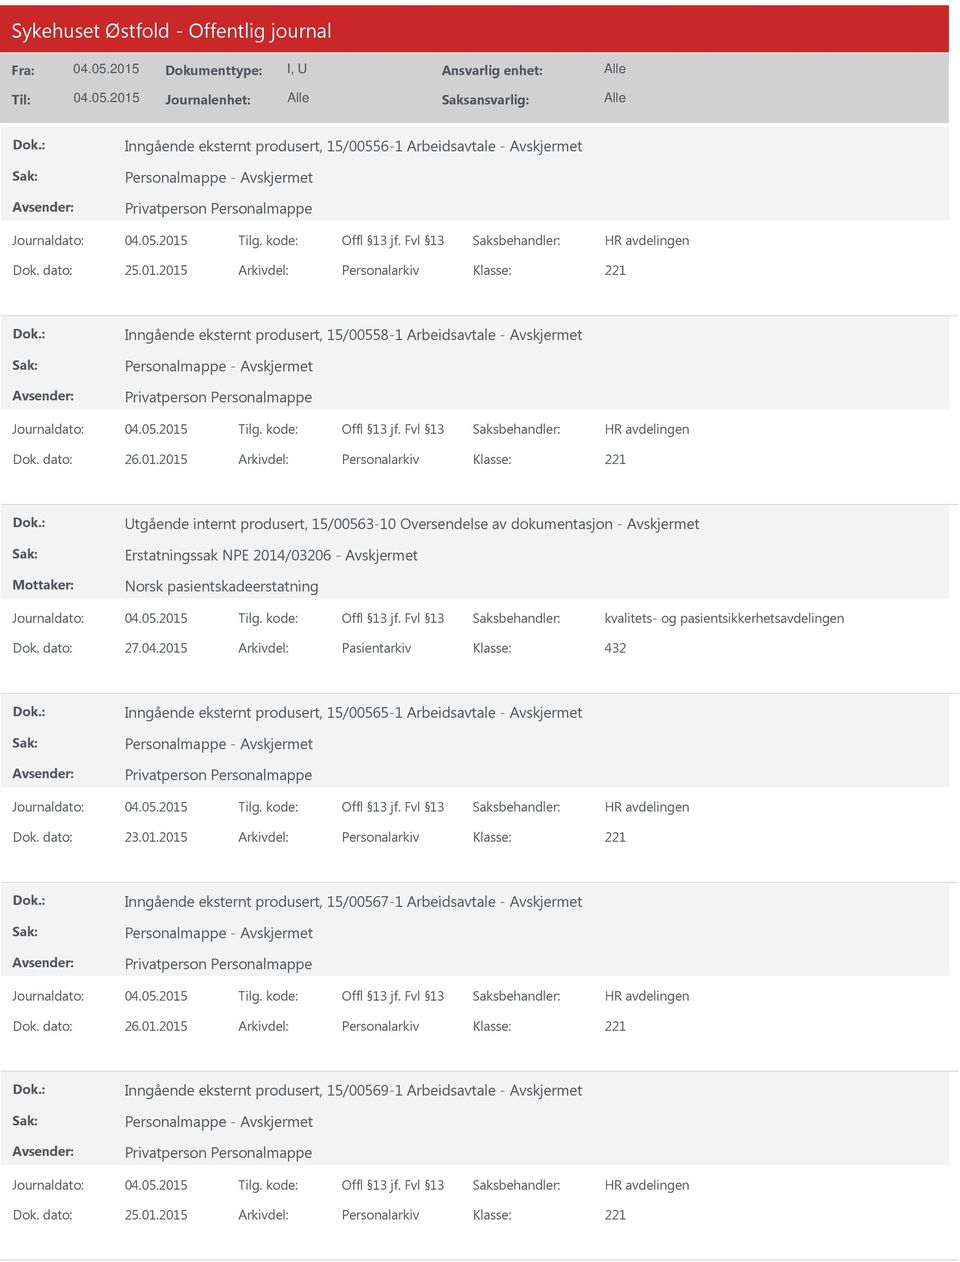 2015 Arkivdel: Personalarkiv tgående internt produsert, 15/00563-10 Oversendelse av dokumentasjon - Erstatningssak NPE 2014/03206 - Norsk pasientskadeerstatning kvalitets- og